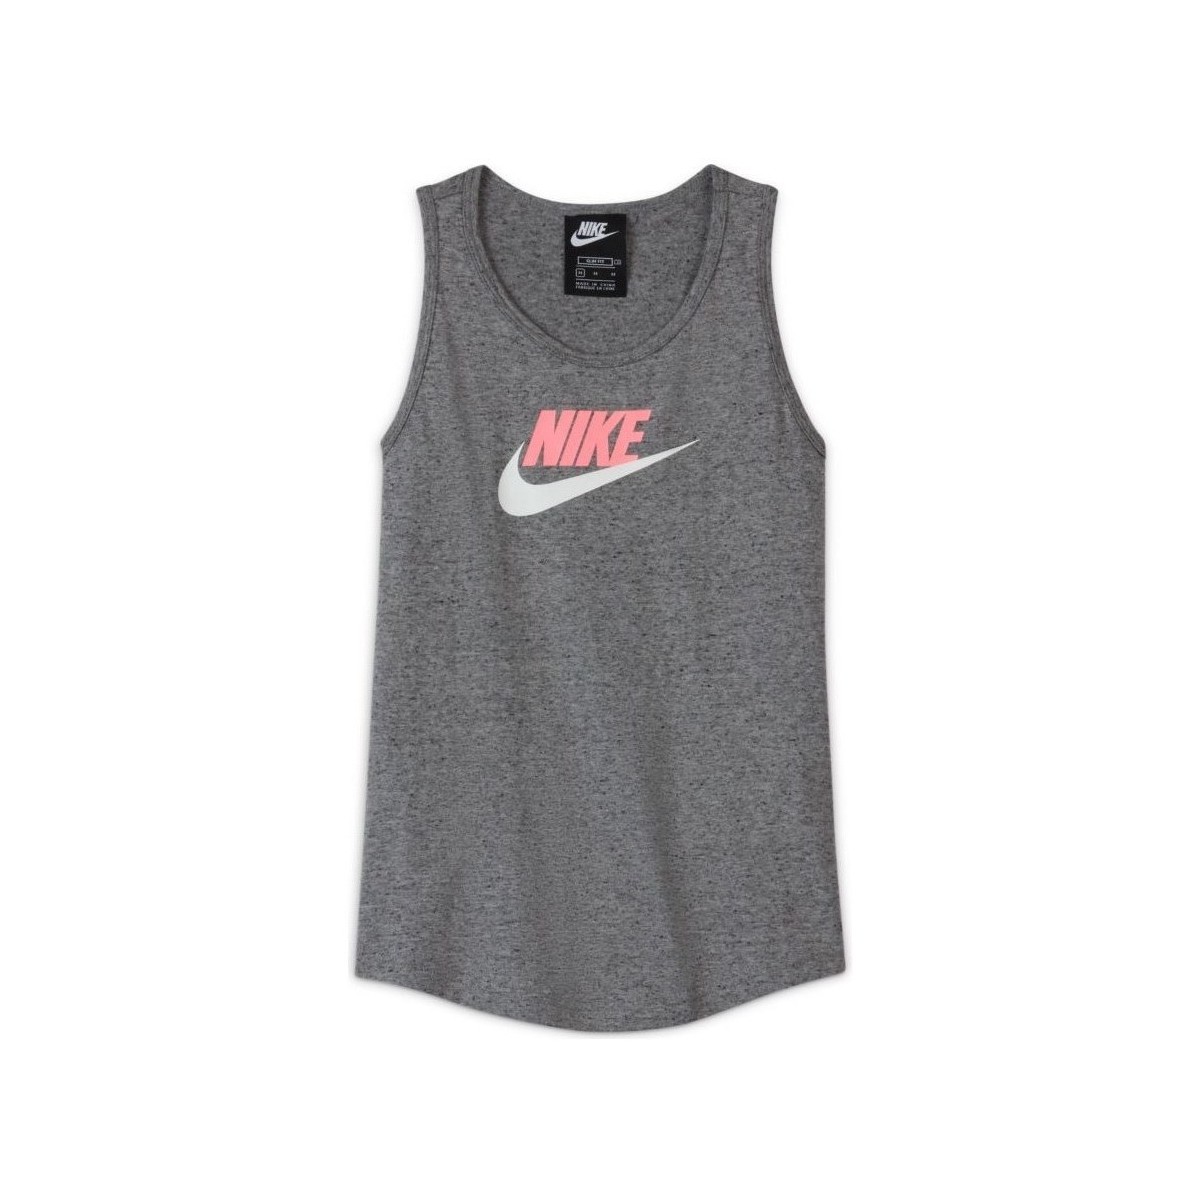 Textiel Meisjes T-shirts korte mouwen Nike Sportswear Grijs